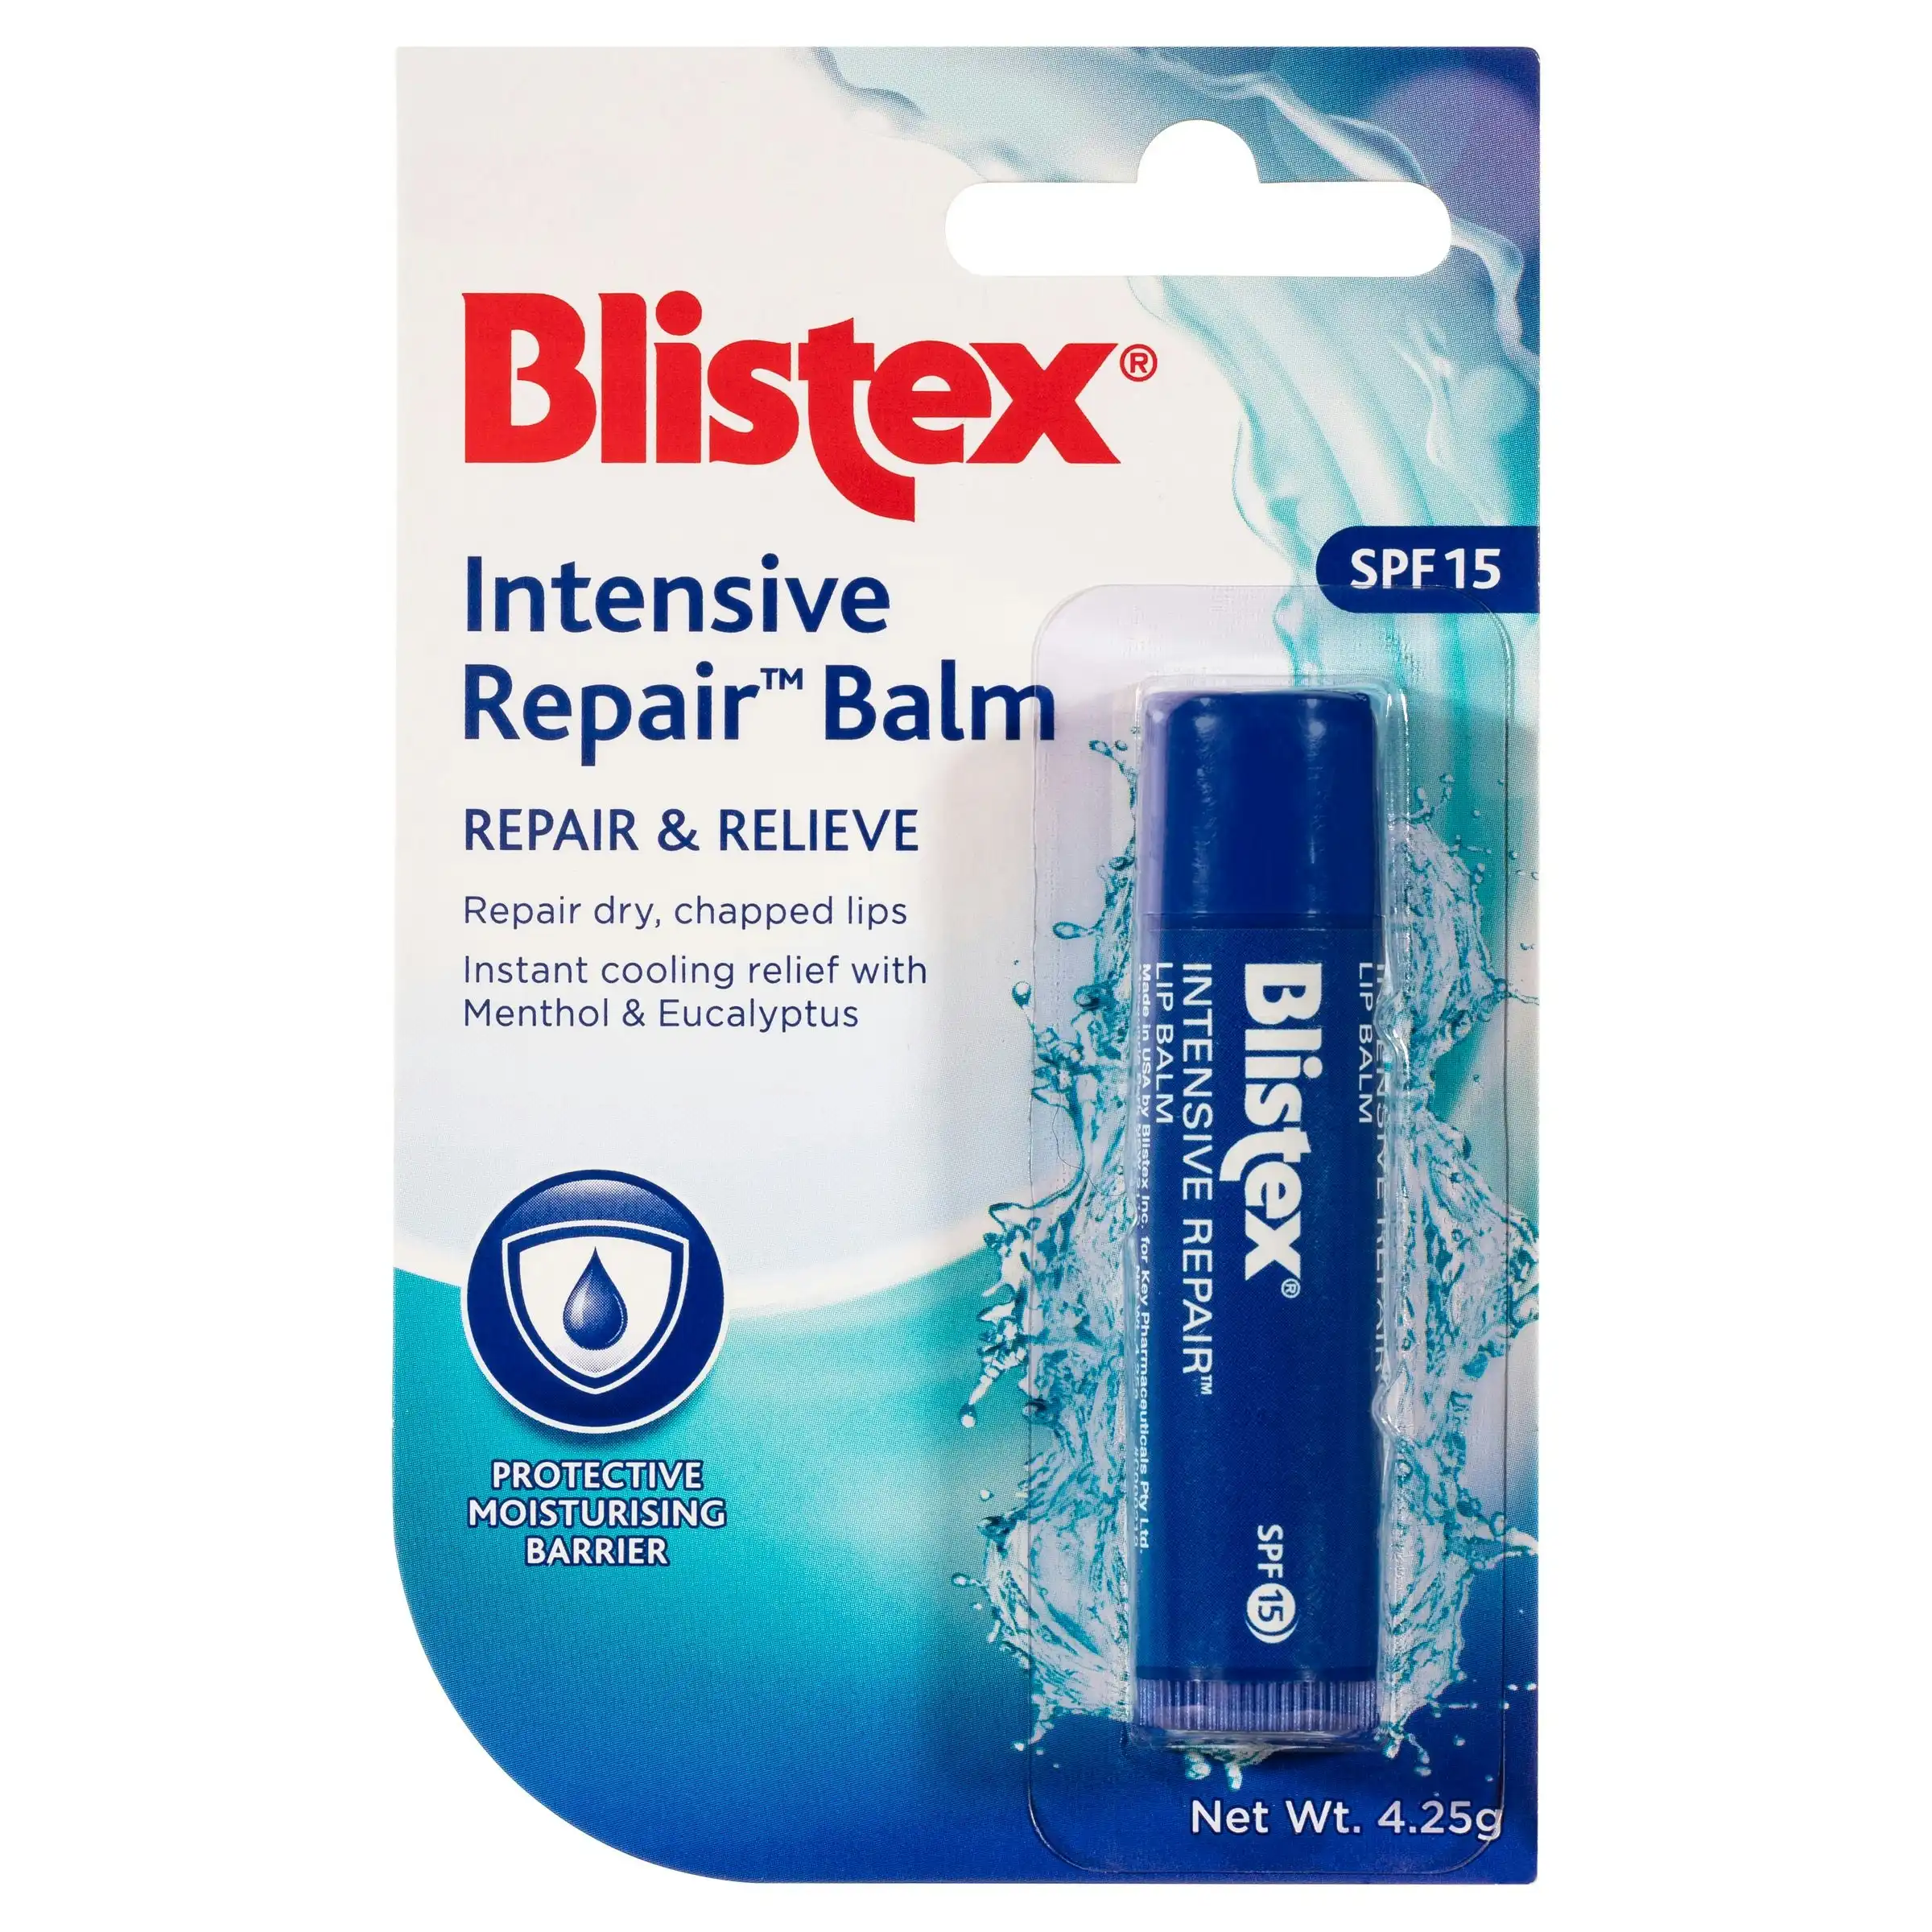 Blistex Intensive Repair Balm 15+ 4.25g